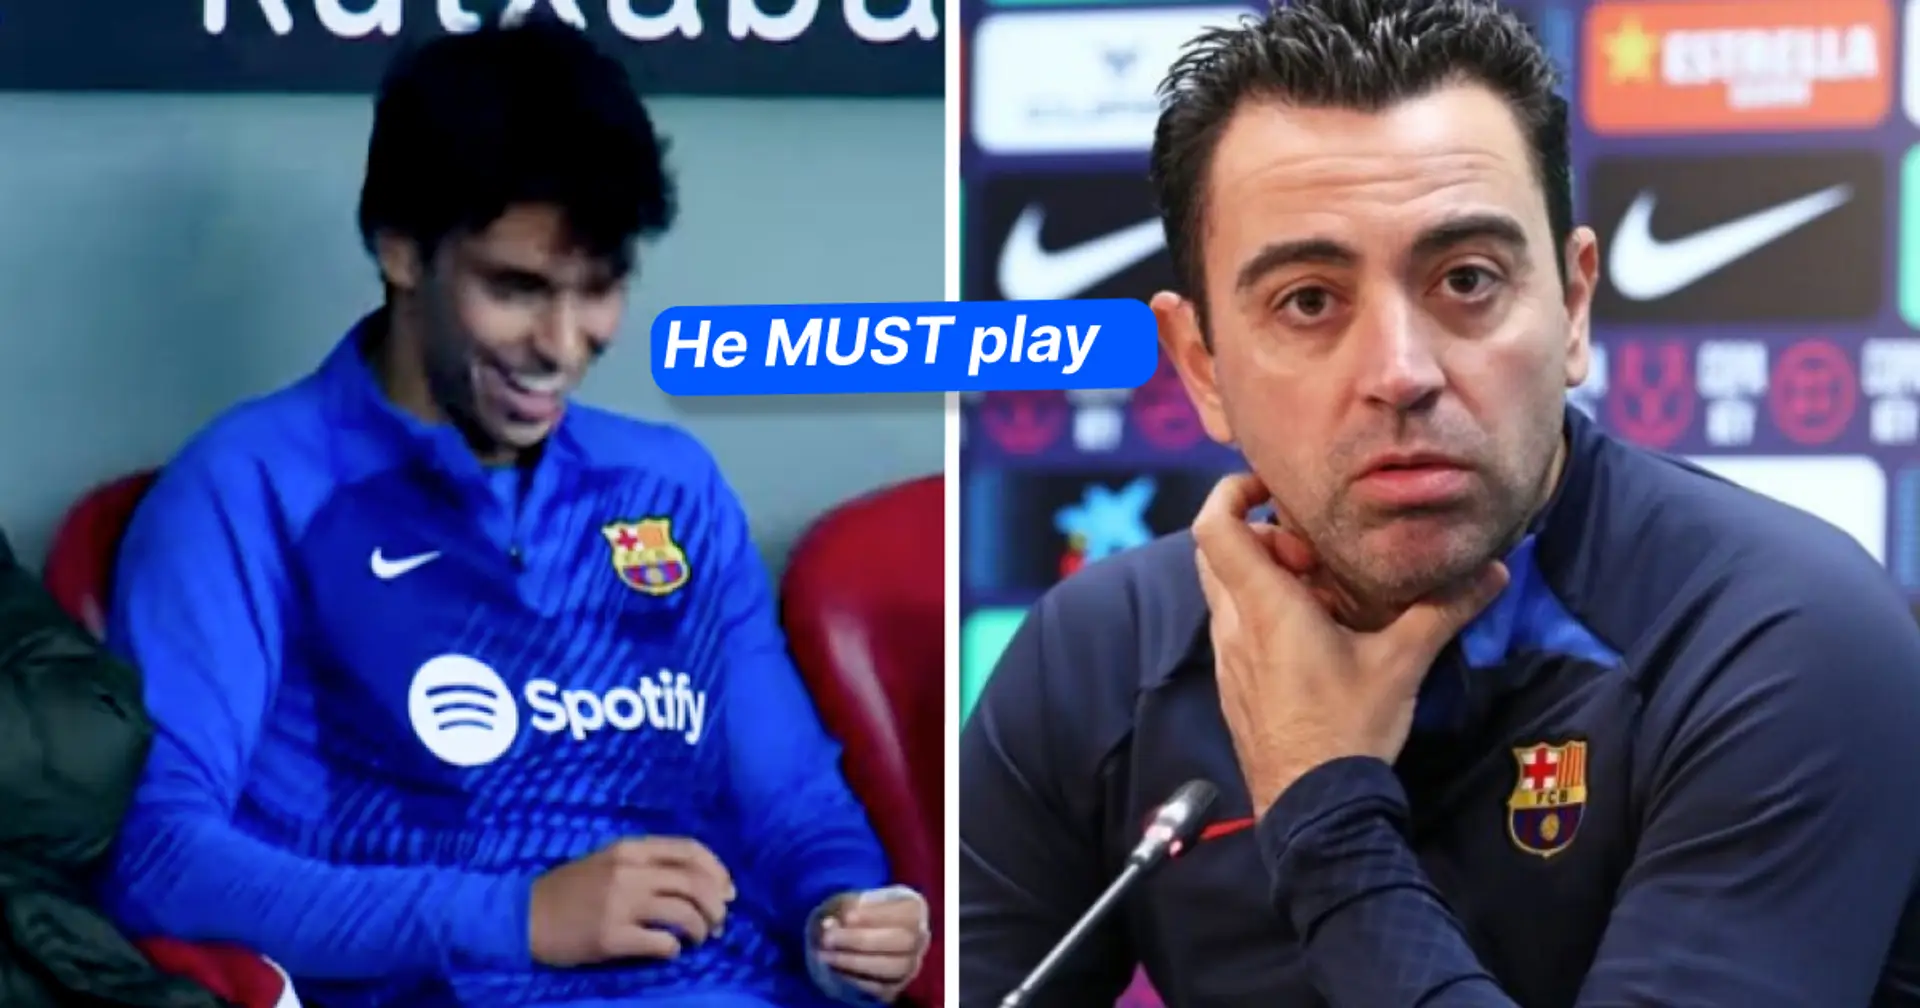 "Il DOIT jouer": un fan nomme un joueur de banc qui bénéficiera le plus de la crise des blessures au Barça – les Cules sont d'accord